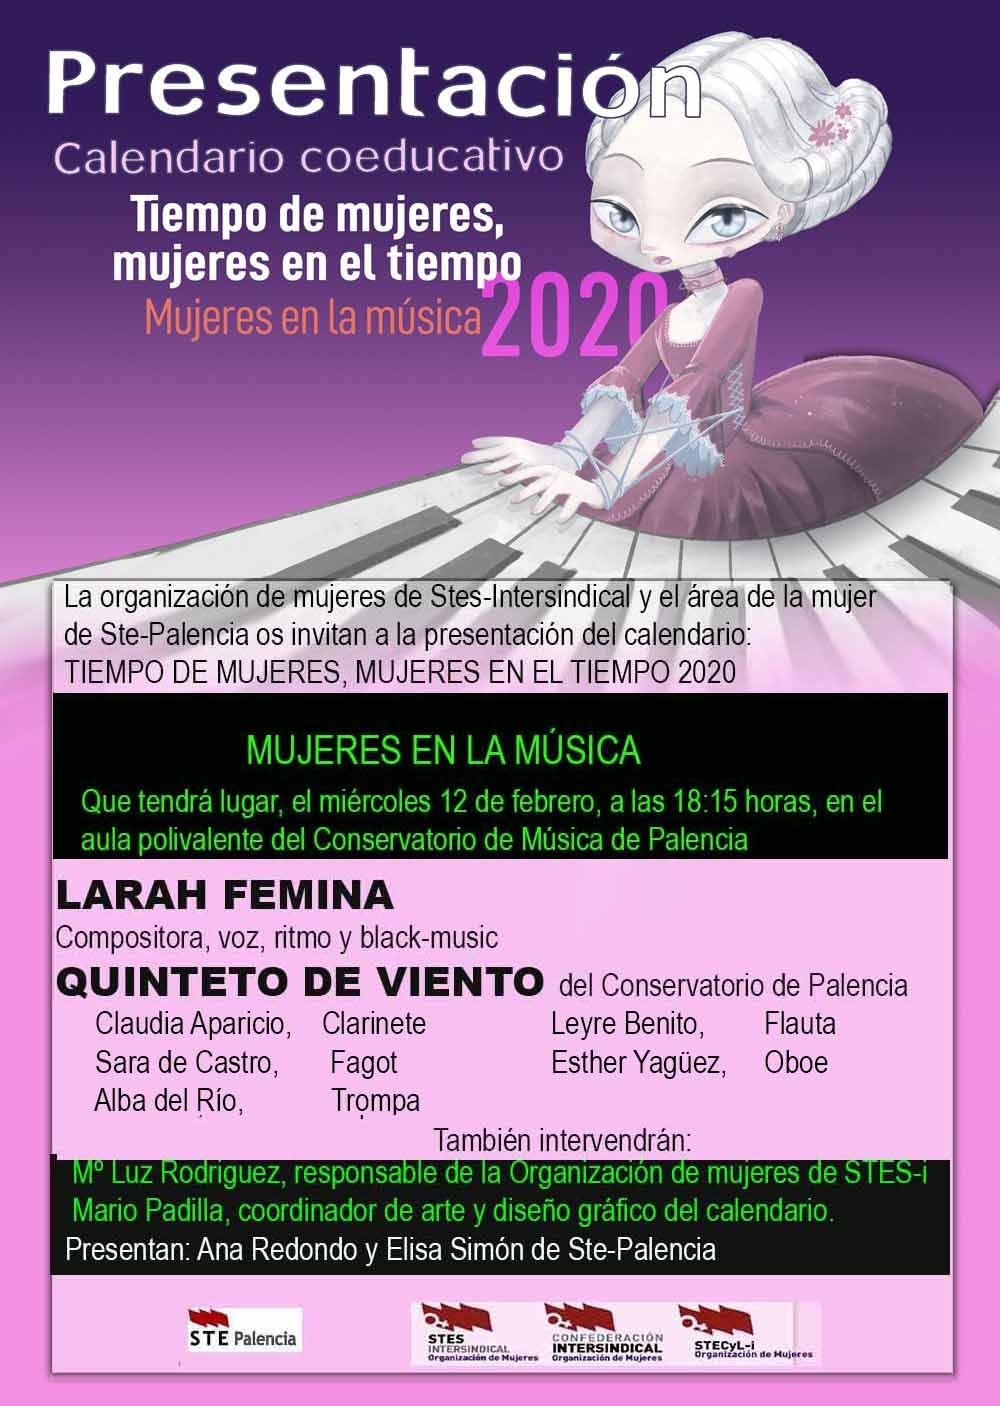 Presentacion-Calendario-2020-Palencia